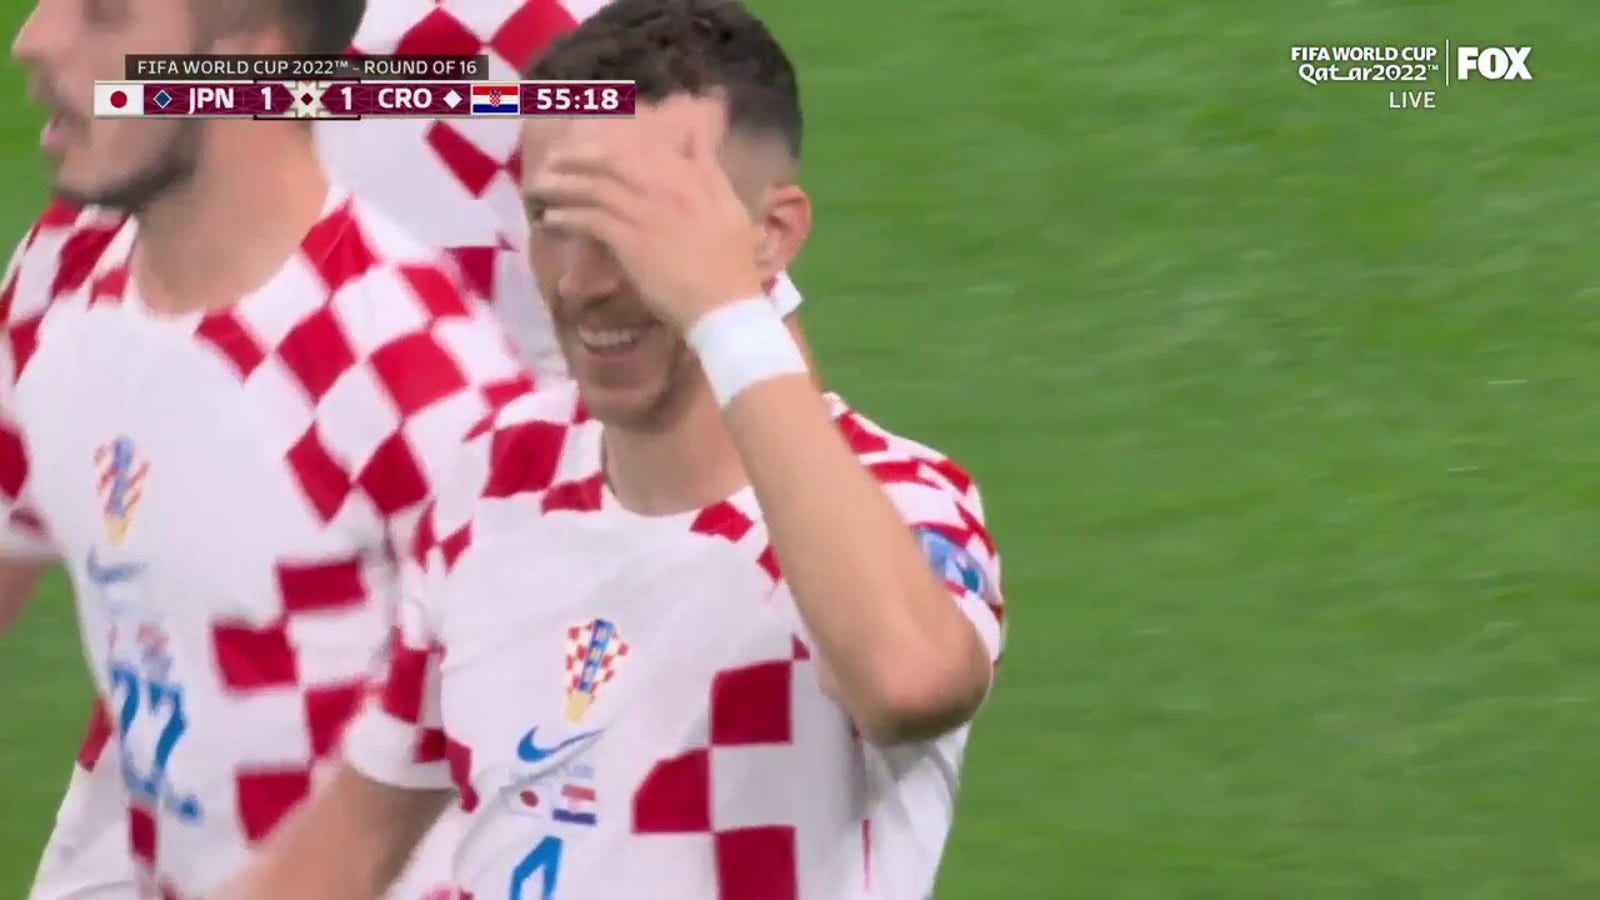 Der Kroate Ivan Perisic erzielt in der 55. Minute ein Tor gegen Japan